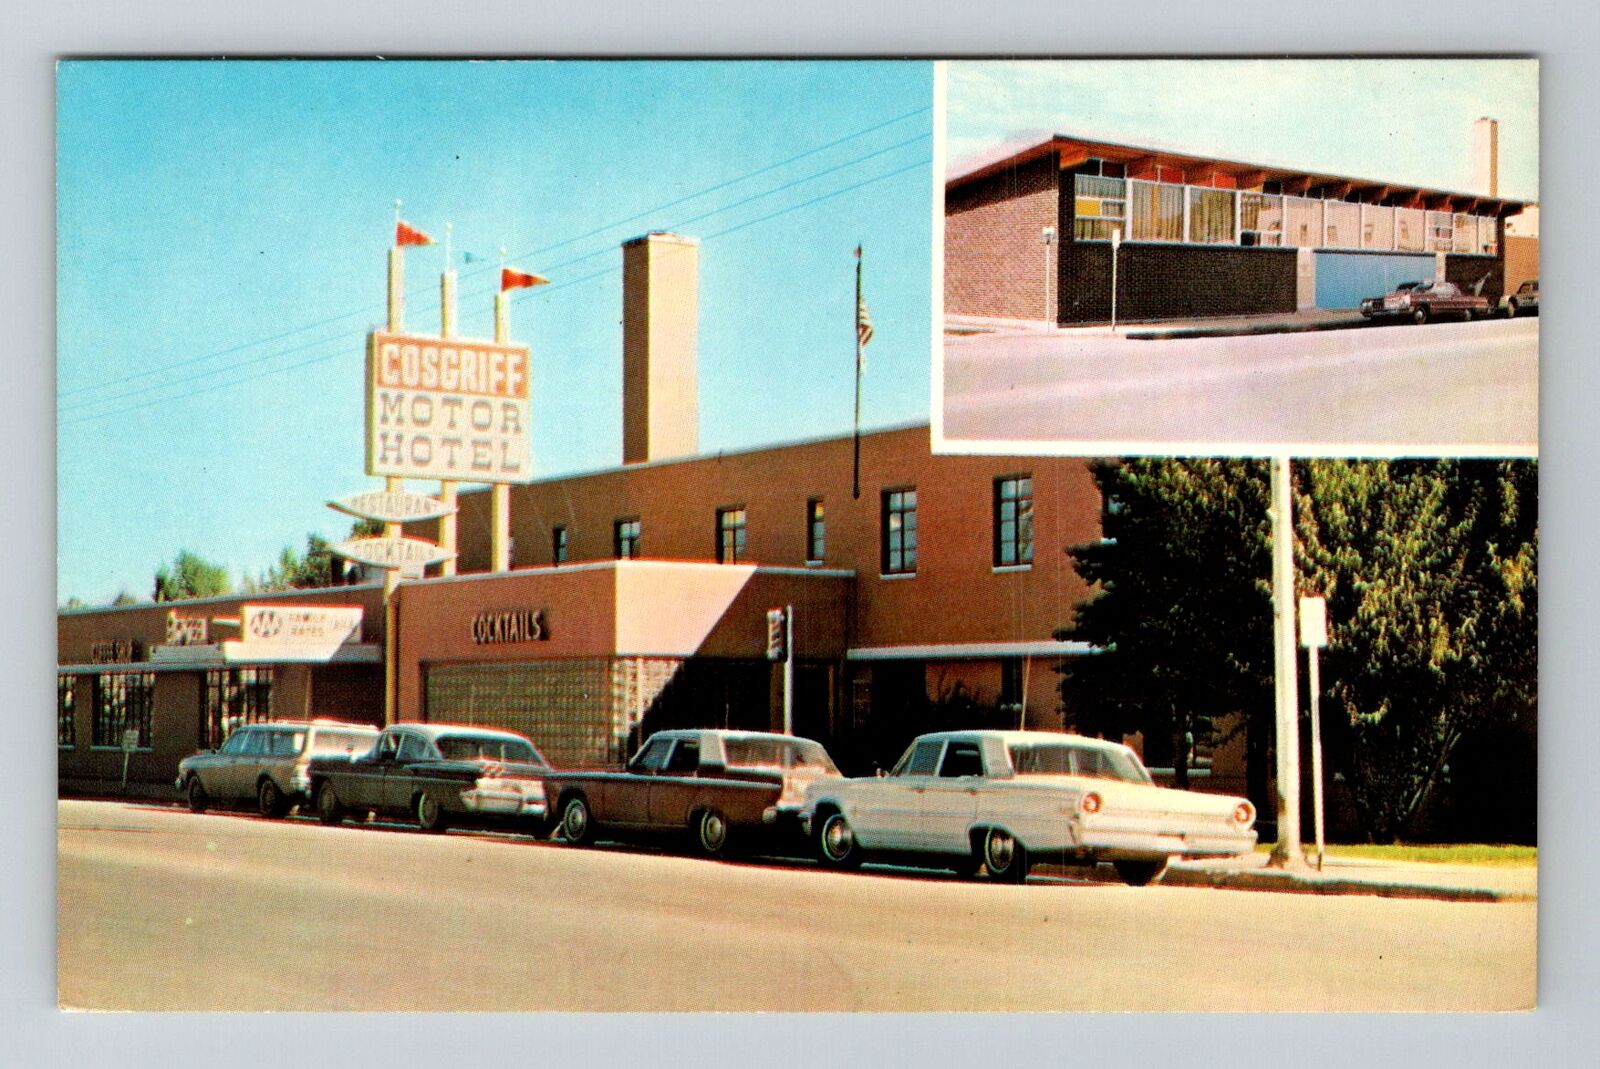 Craig CO-Colorado, Cosgriff Motor Hotel, Advertisement, Vintage Postcard